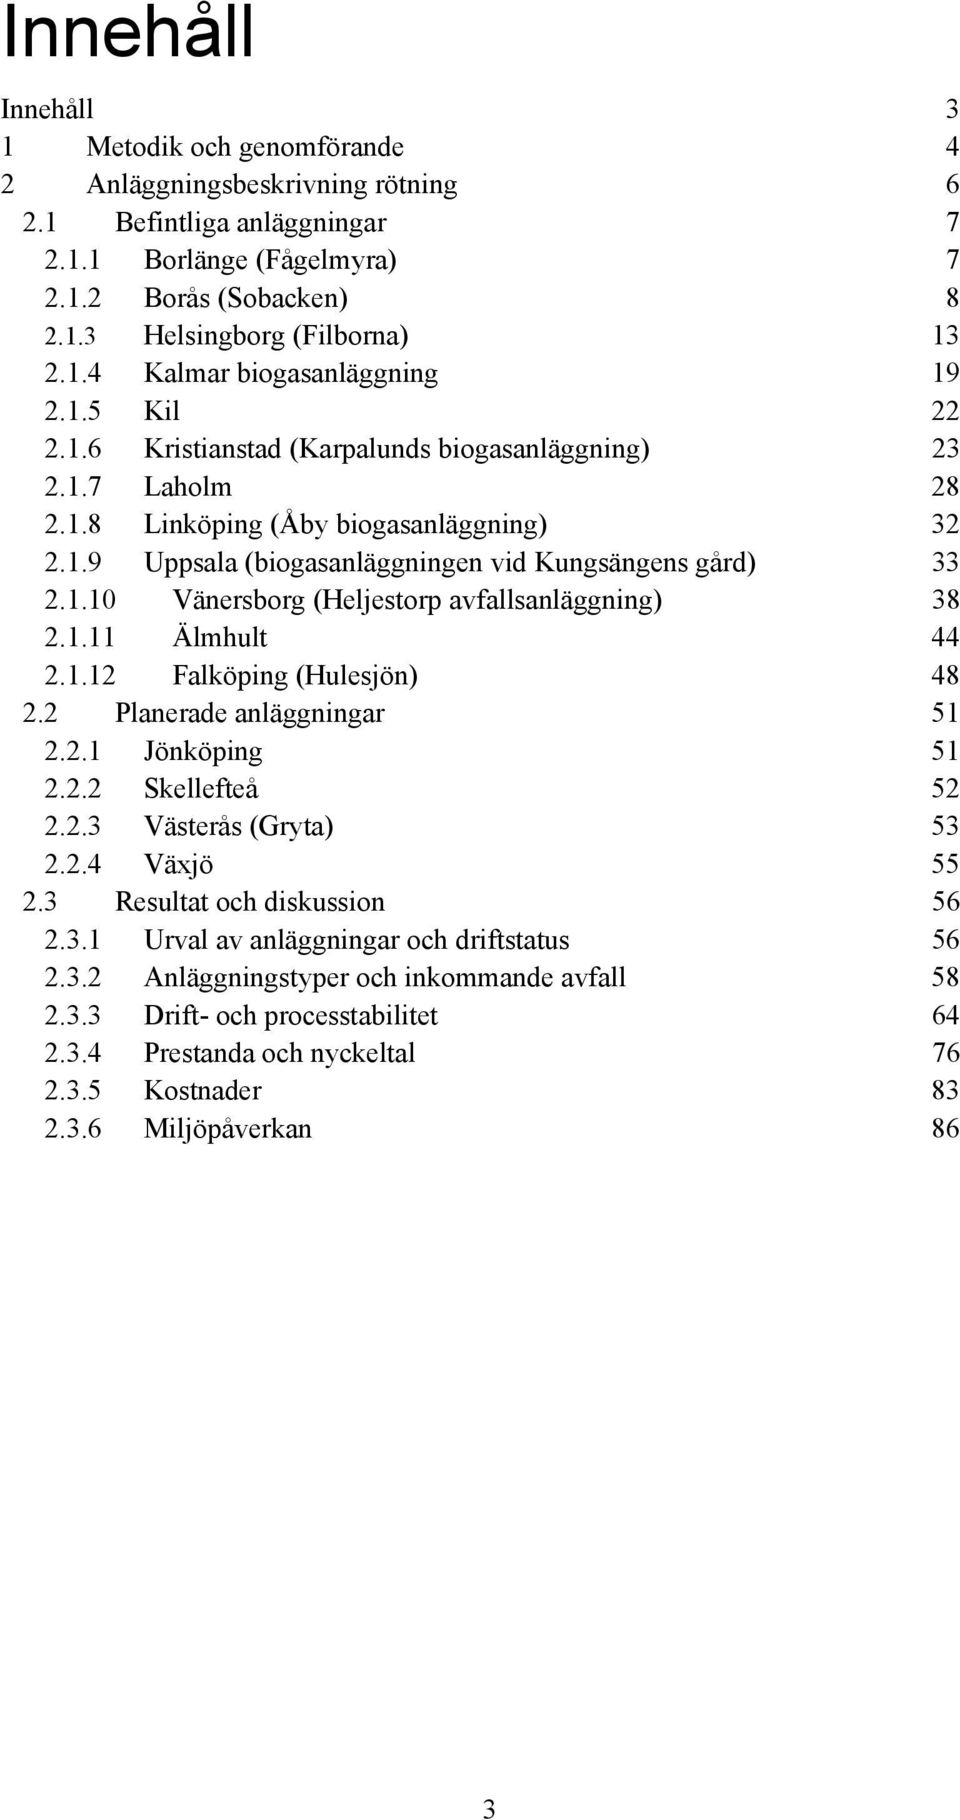 1.10 Vänersborg (Heljestorp avfallsanläggning) 38 2.1.11 Älmhult 44 2.1.12 Falköping (Hulesjön) 48 2.2 Planerade anläggningar 51 2.2.1 Jönköping 51 2.2.2 Skellefteå 52 2.2.3 Västerås (Gryta) 53 2.2.4 Växjö 55 2.